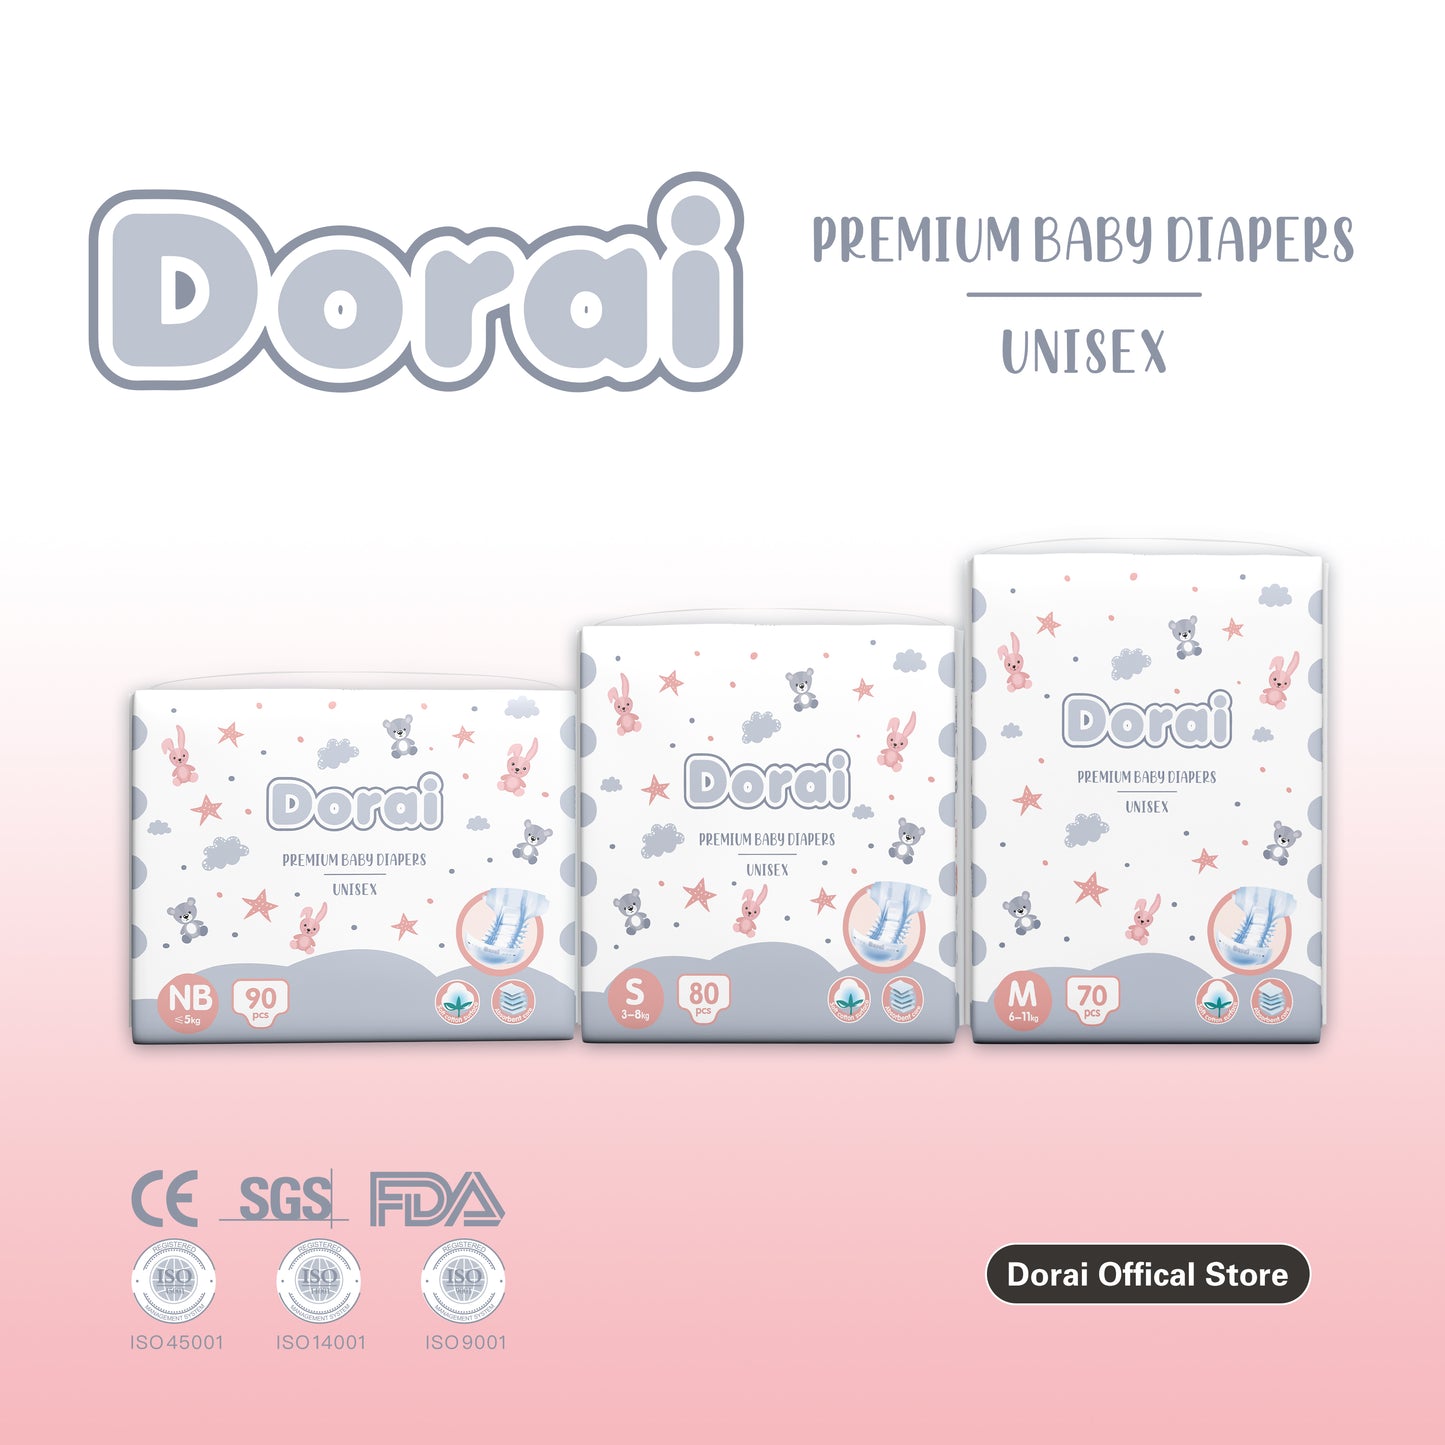 Premium Tape Diaper [Carton]